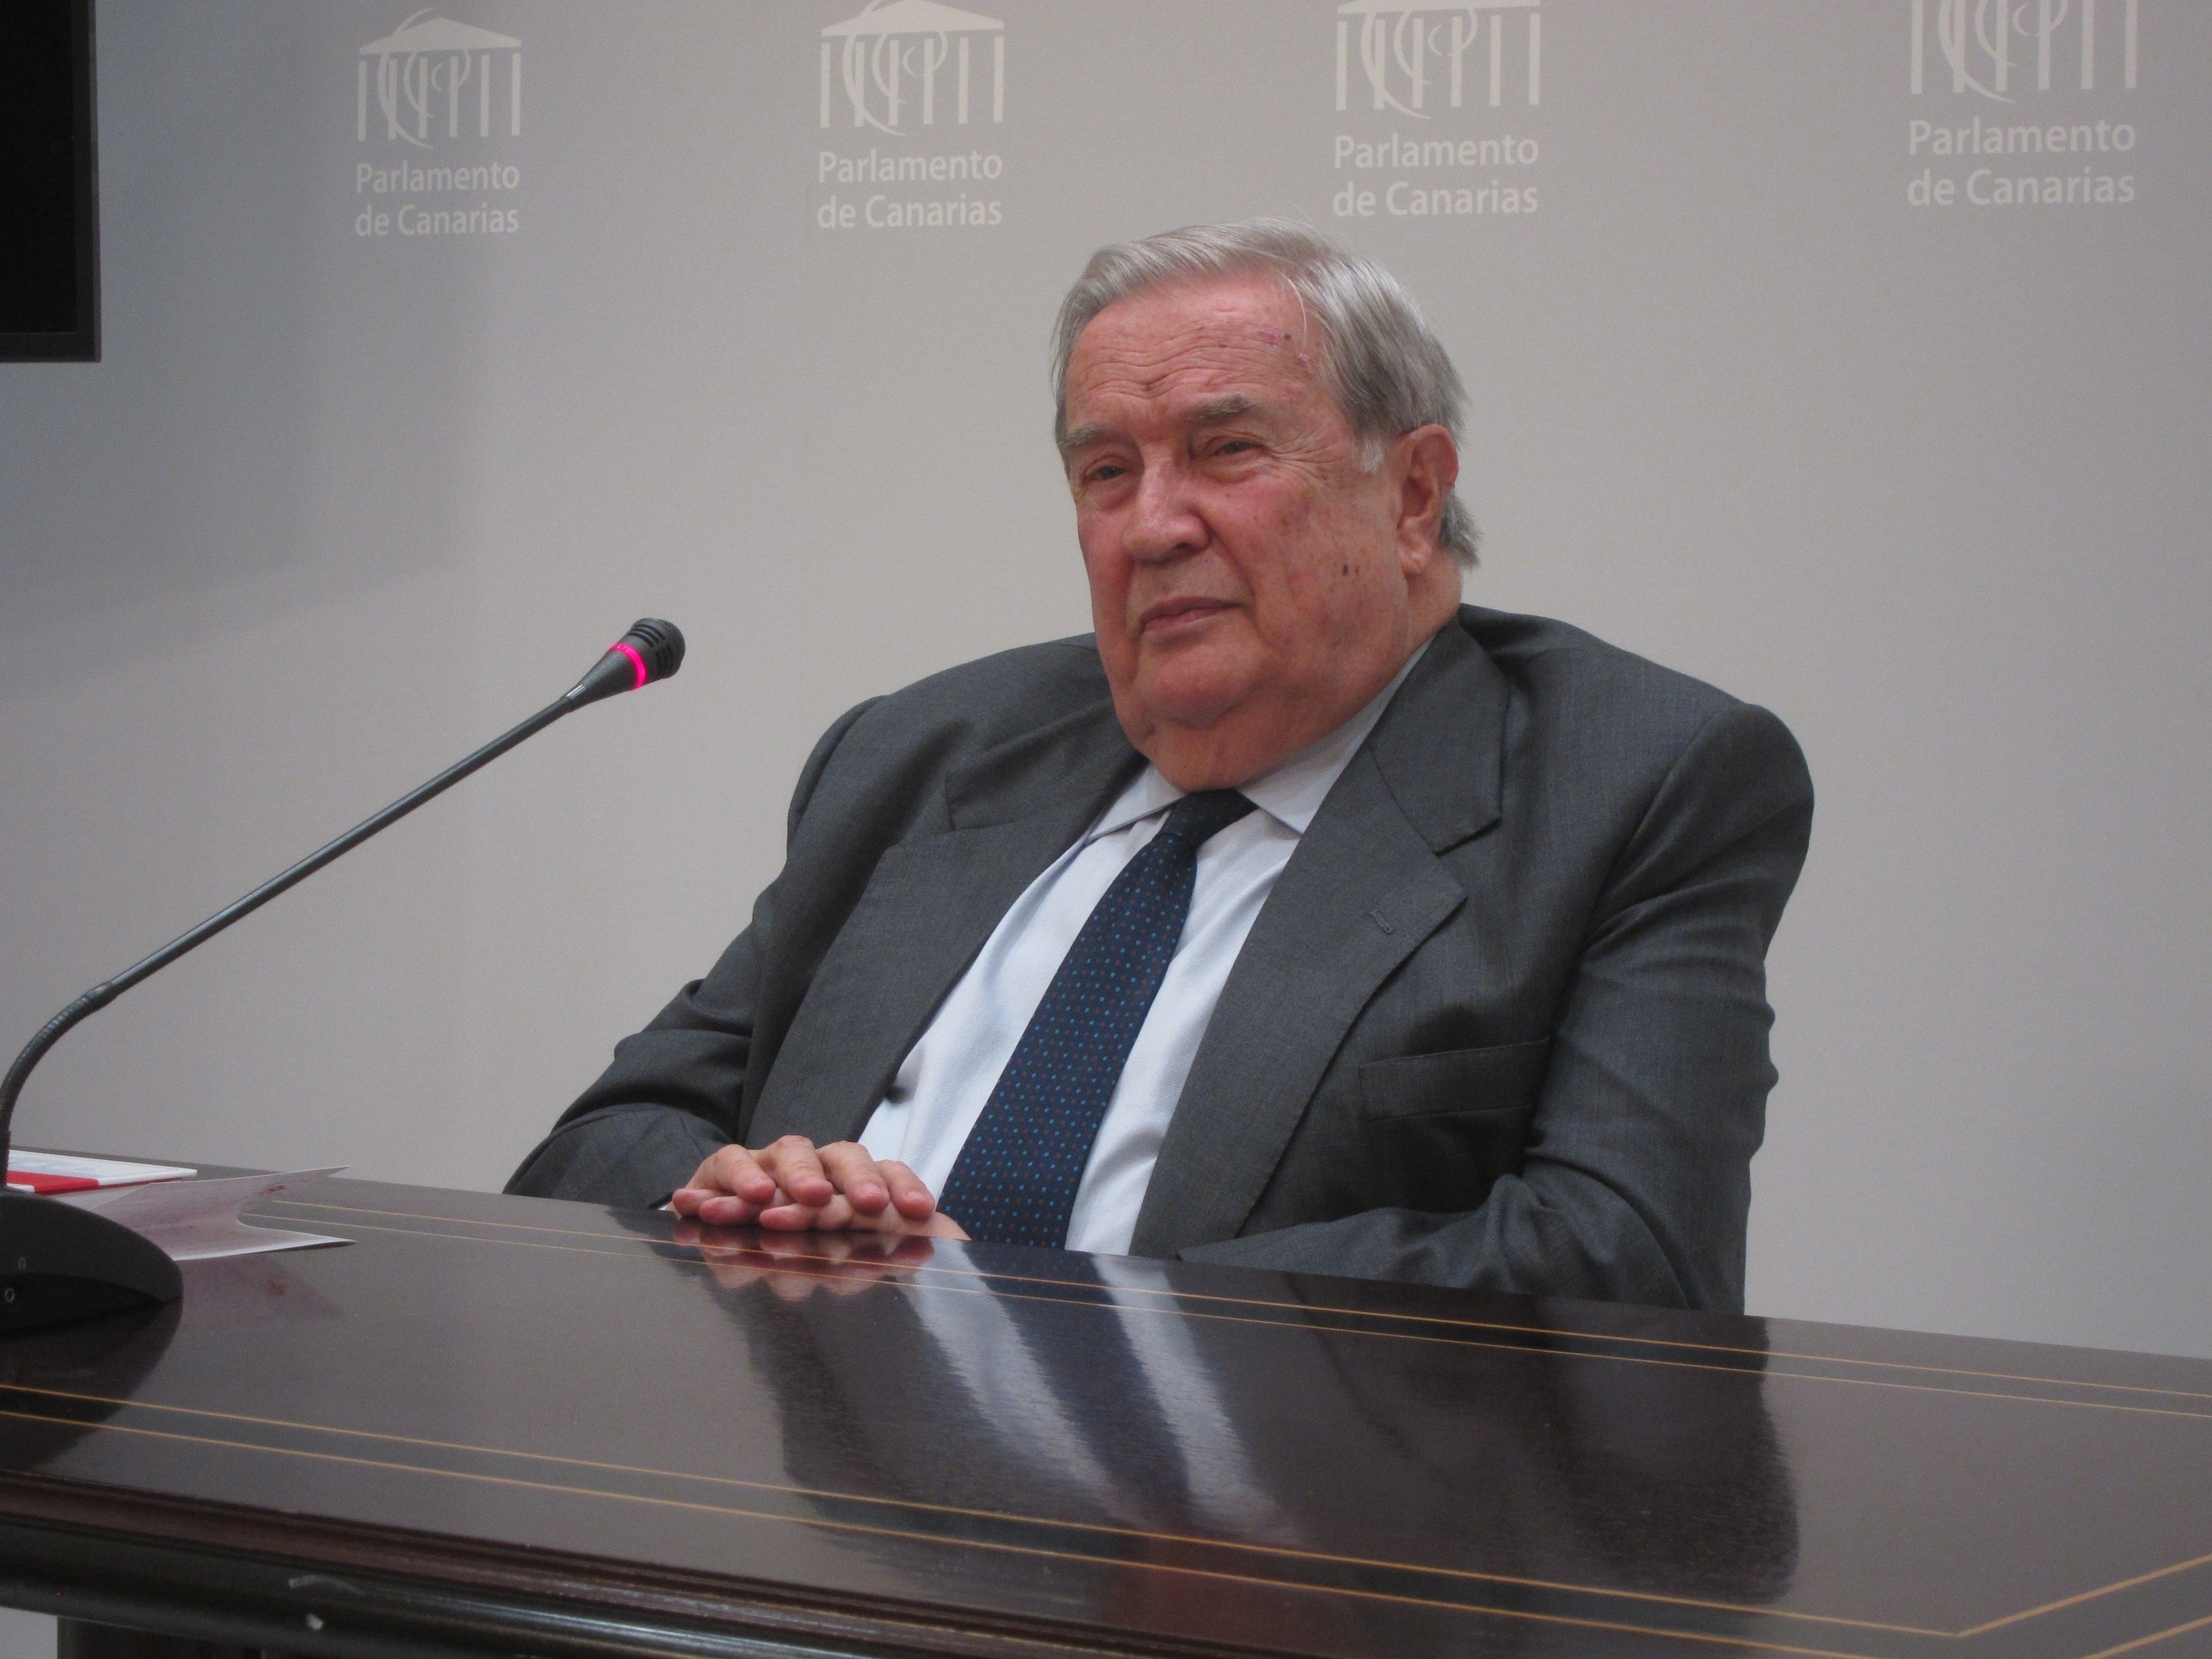 Muere Jerónimo Saavedra, exministro y expresidente de Canarias, a los 87 años